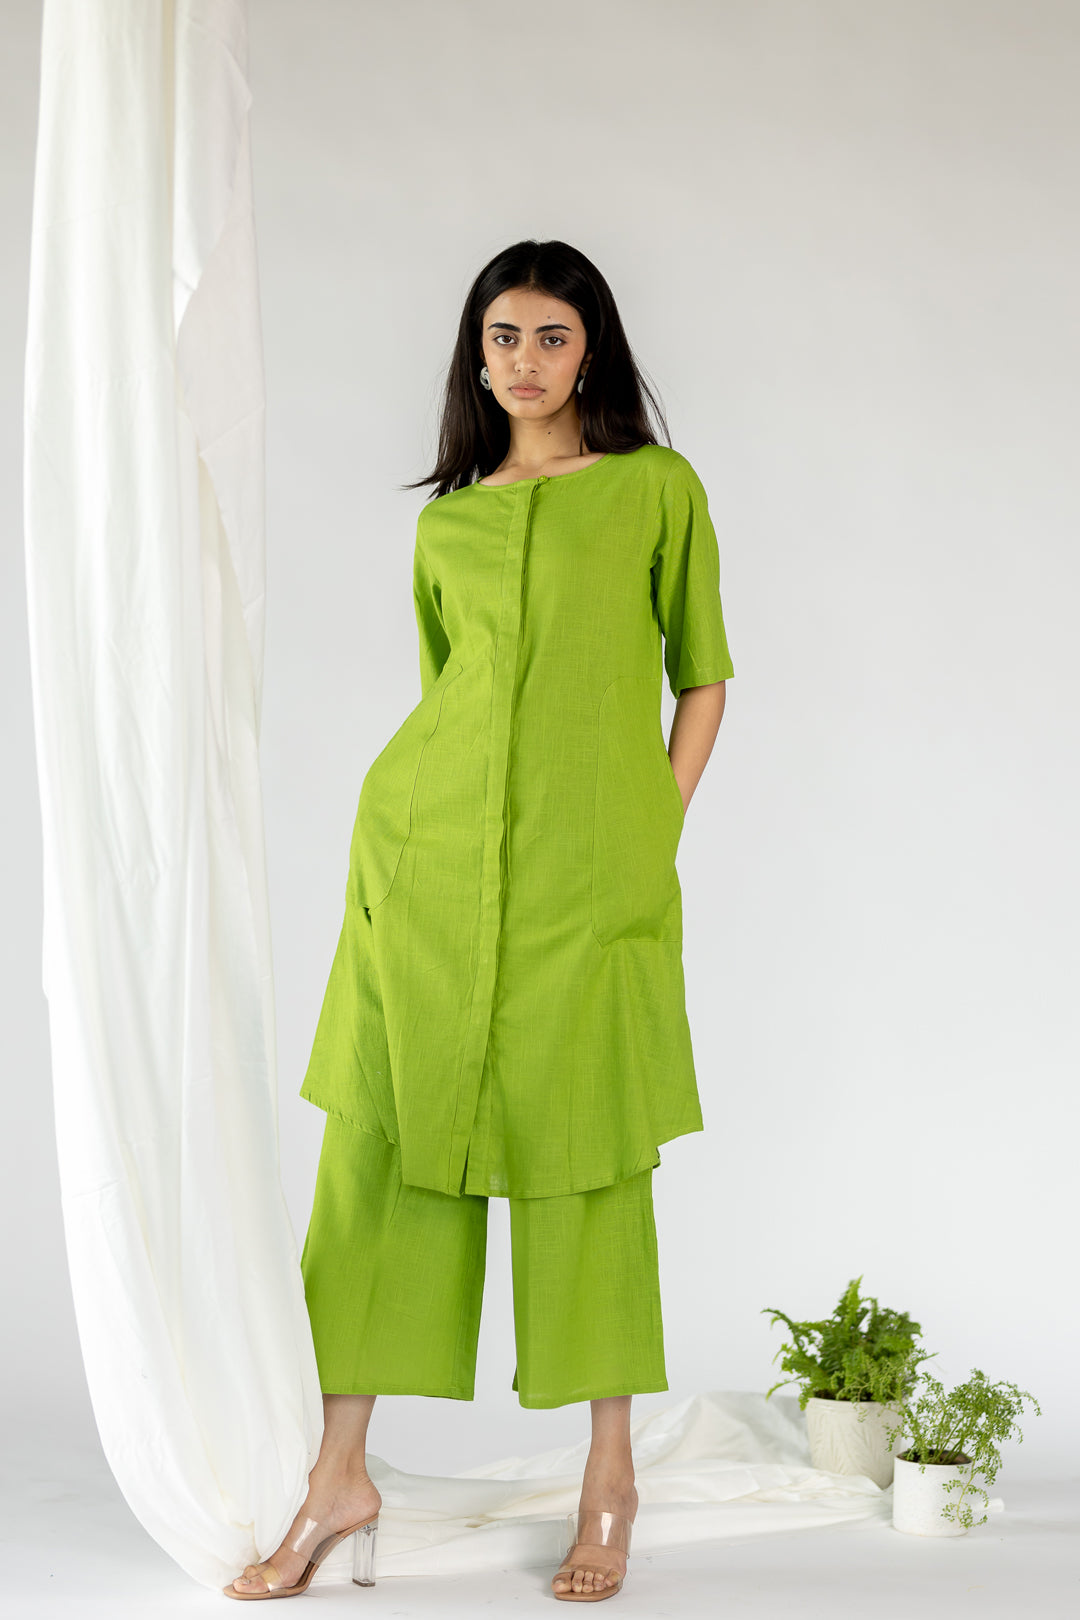 Palm green tunic set